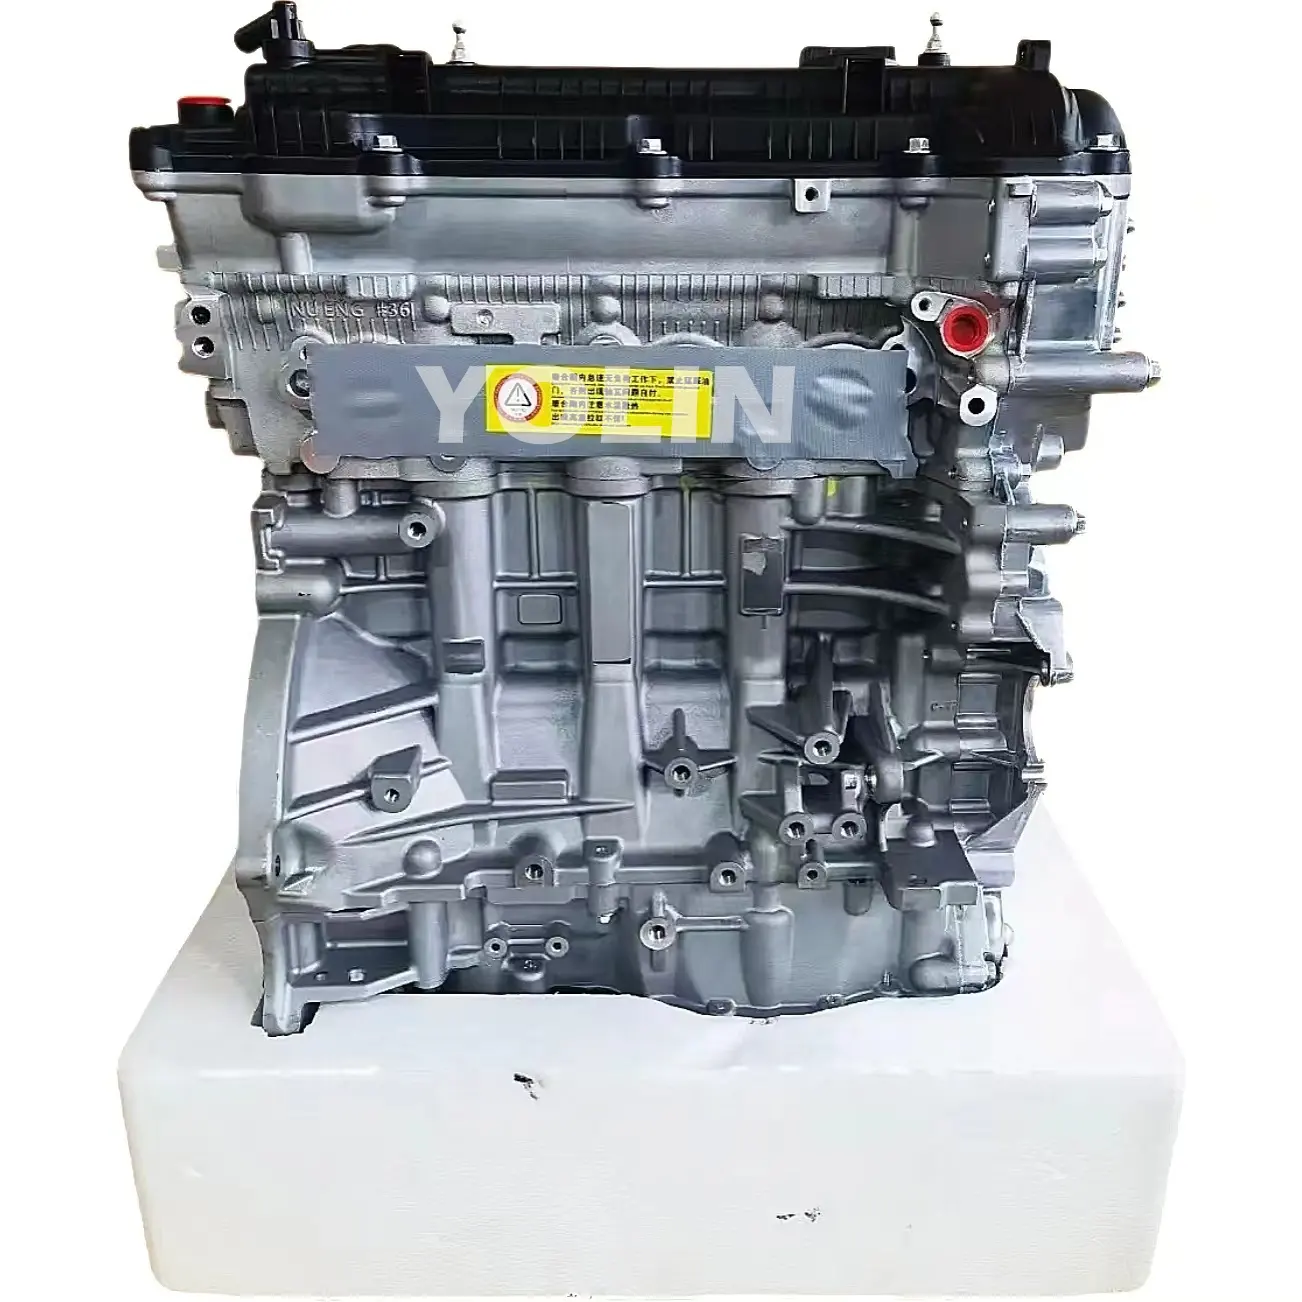 New Korean Car 1.6L Engine G4FG Engine Assembly for Hyundai Elantra MD for kia Forte K3